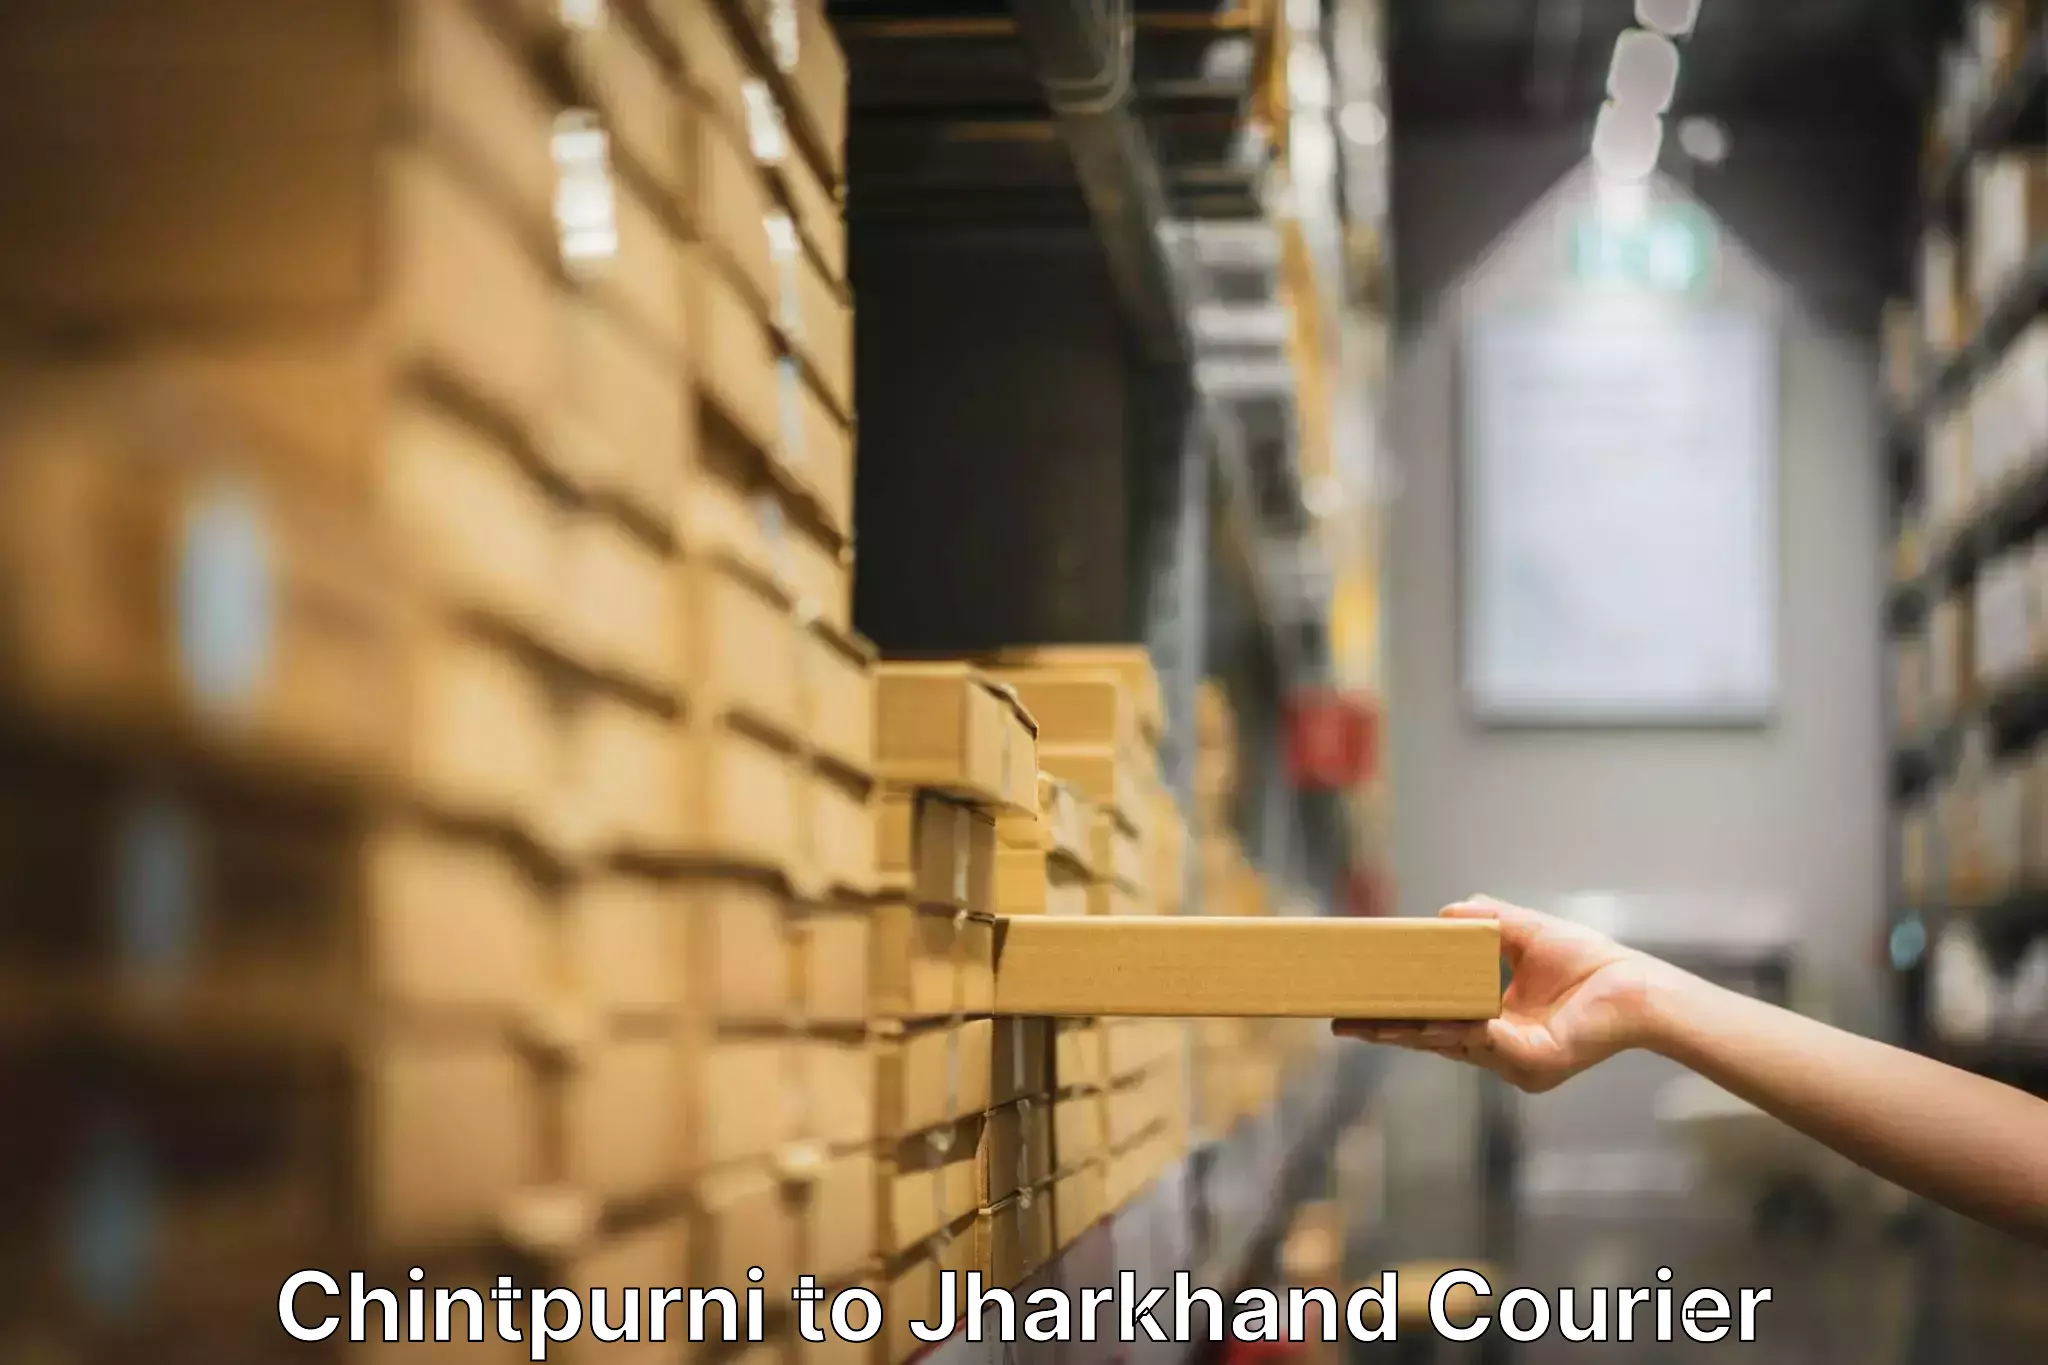 Furniture moving experts Chintpurni to Bero Ranchi